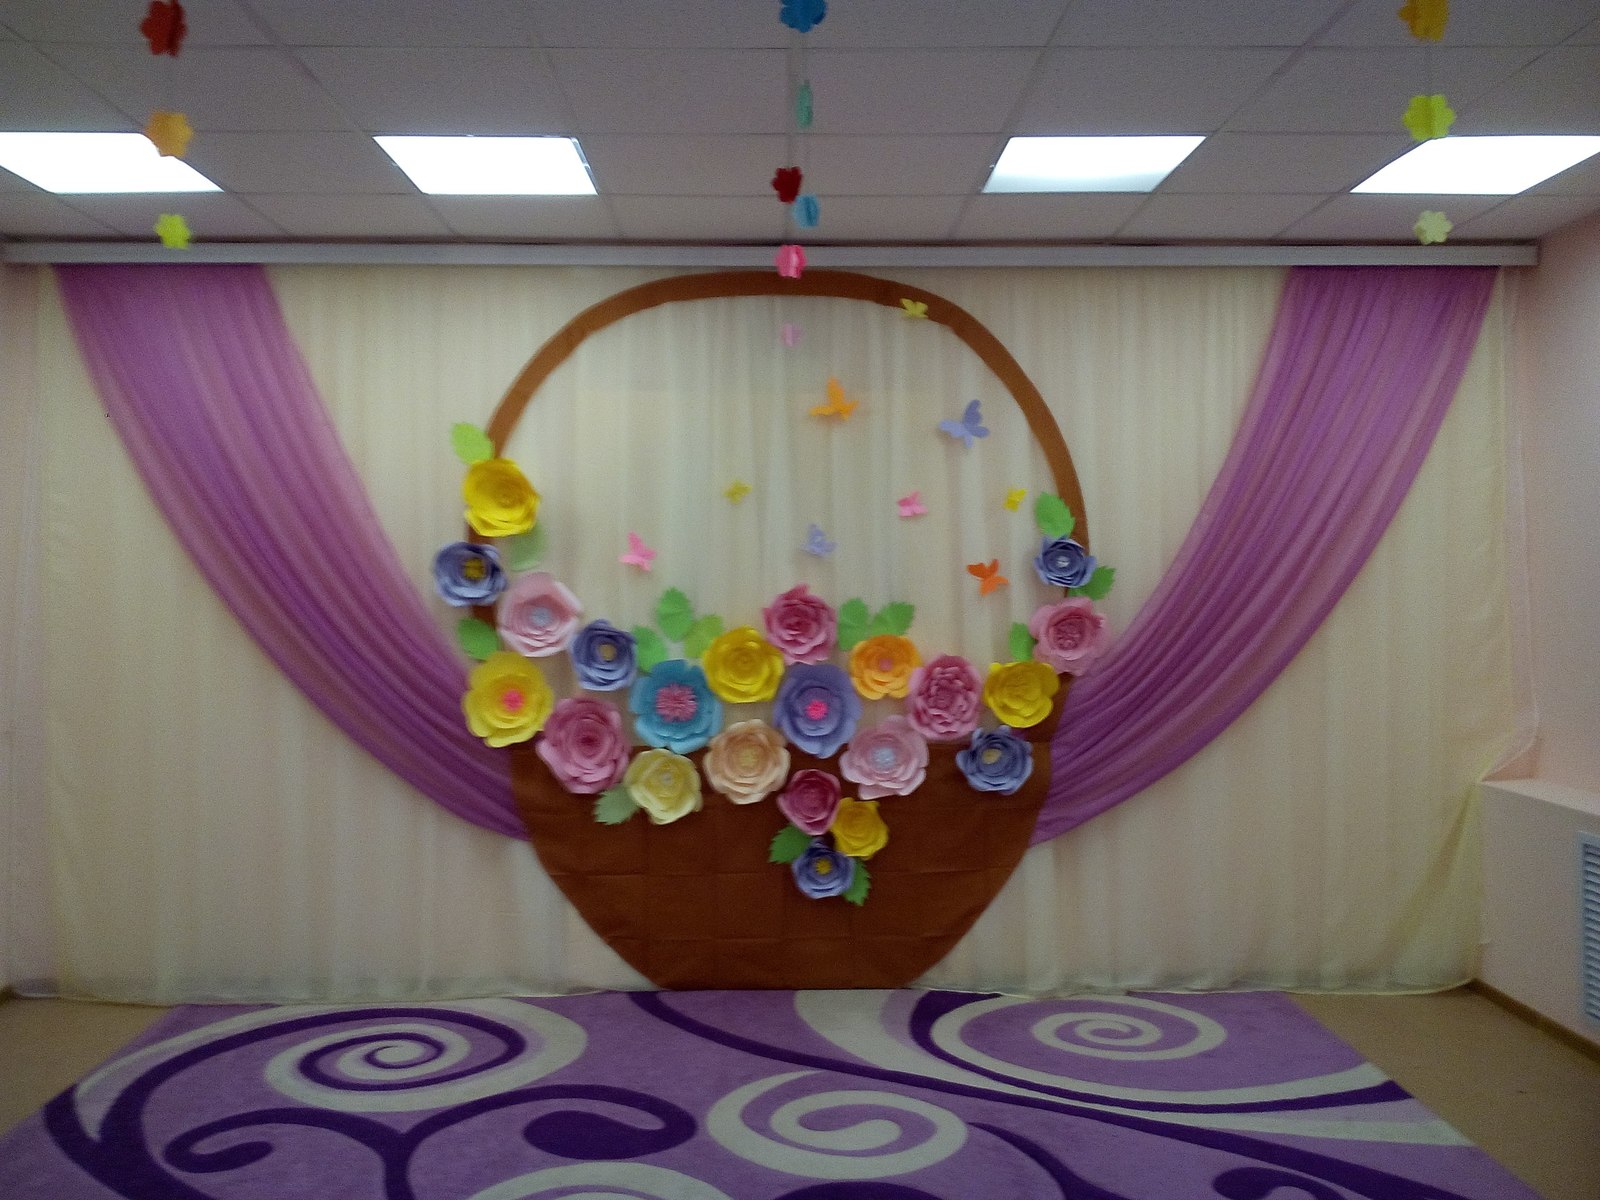 Оформление зала детского сада к выпускному шарами